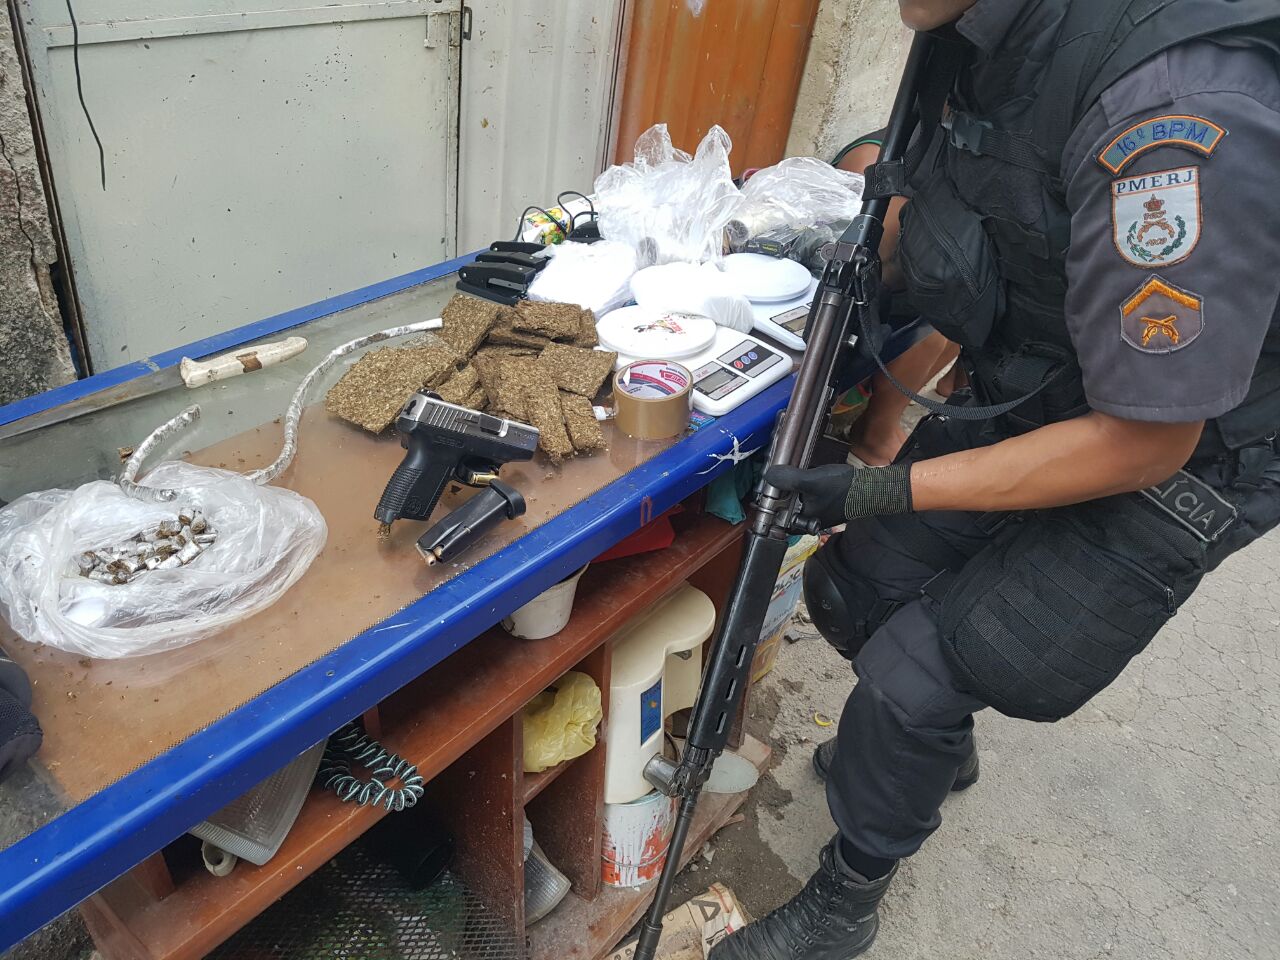 Drogas e armas são apreendidas pela Polícia Militar, com informações do Disque Denúncia